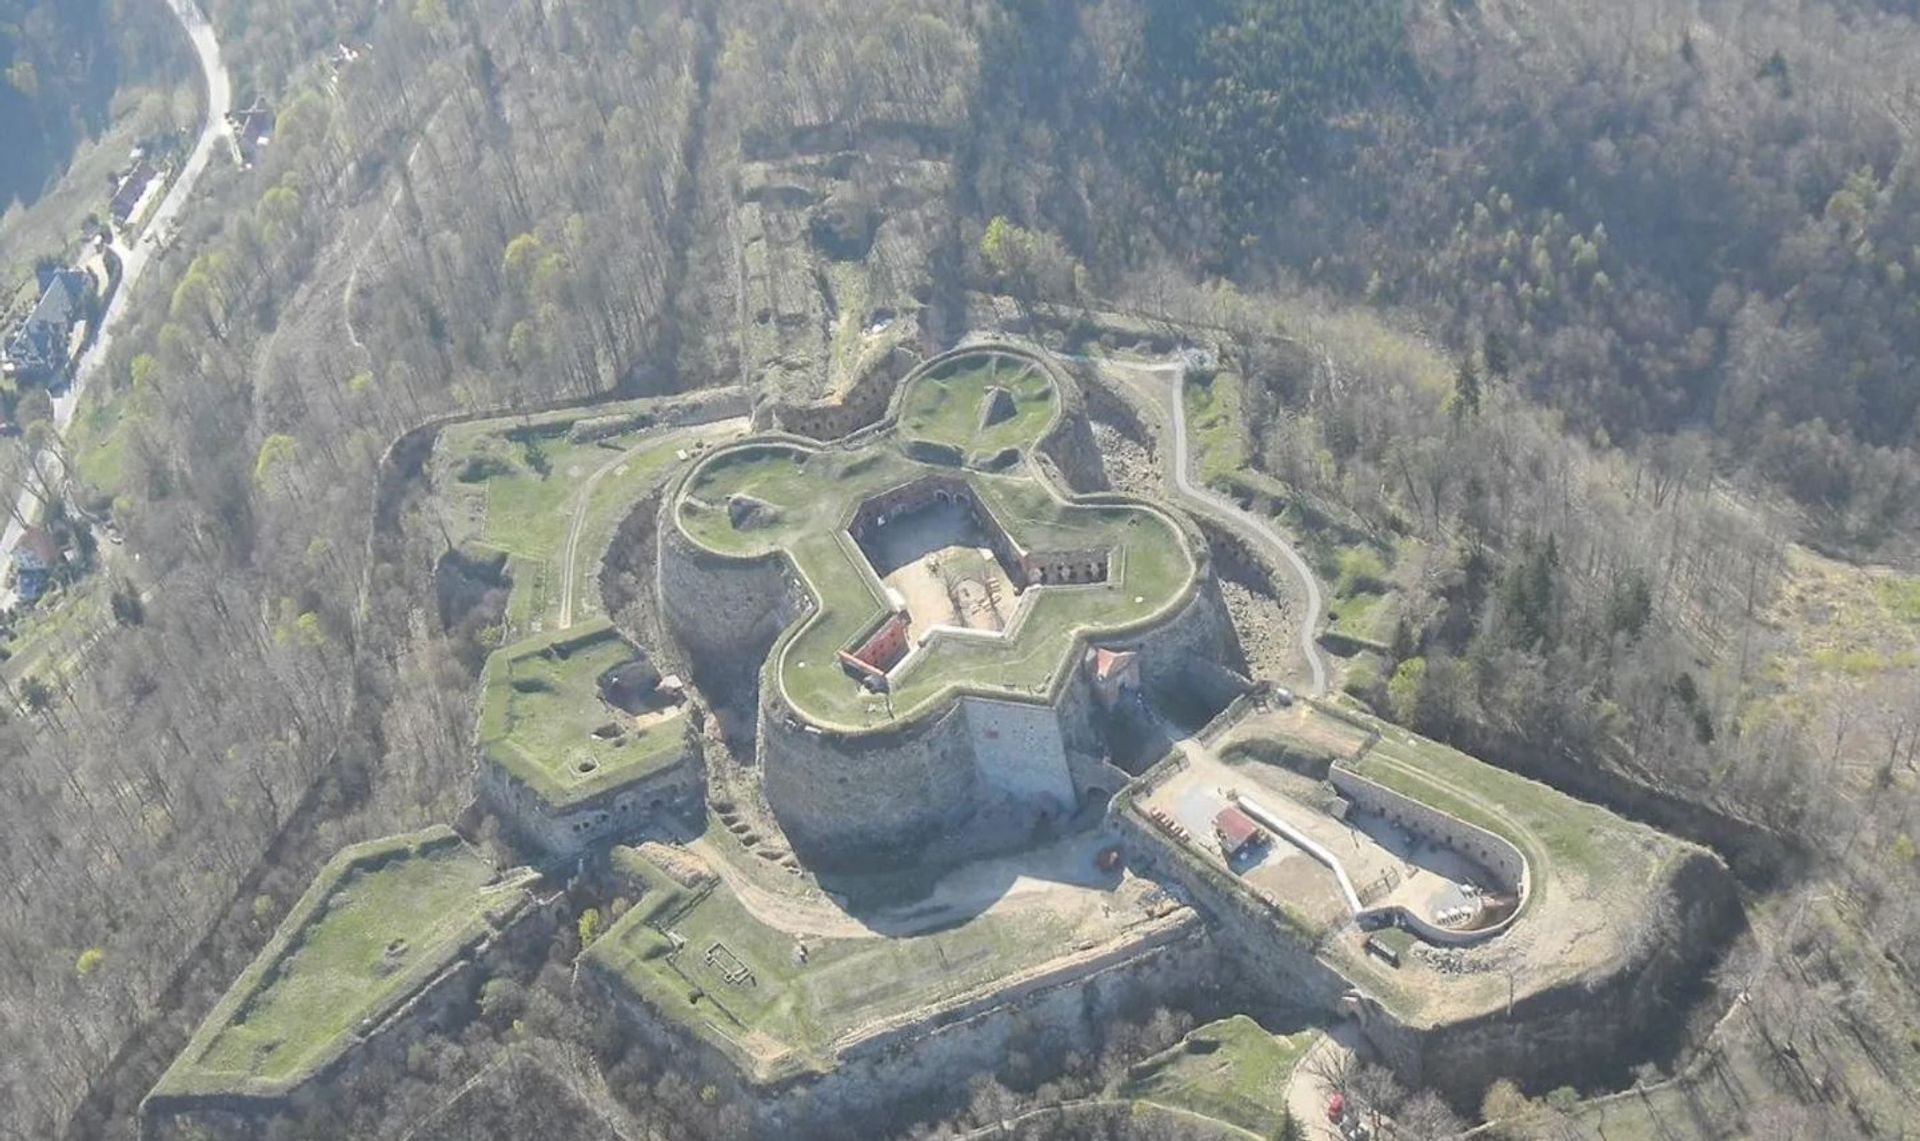 Za 45 milionów złotych Twierdza Srebrna Góra przejdzie wielką rewitalizację